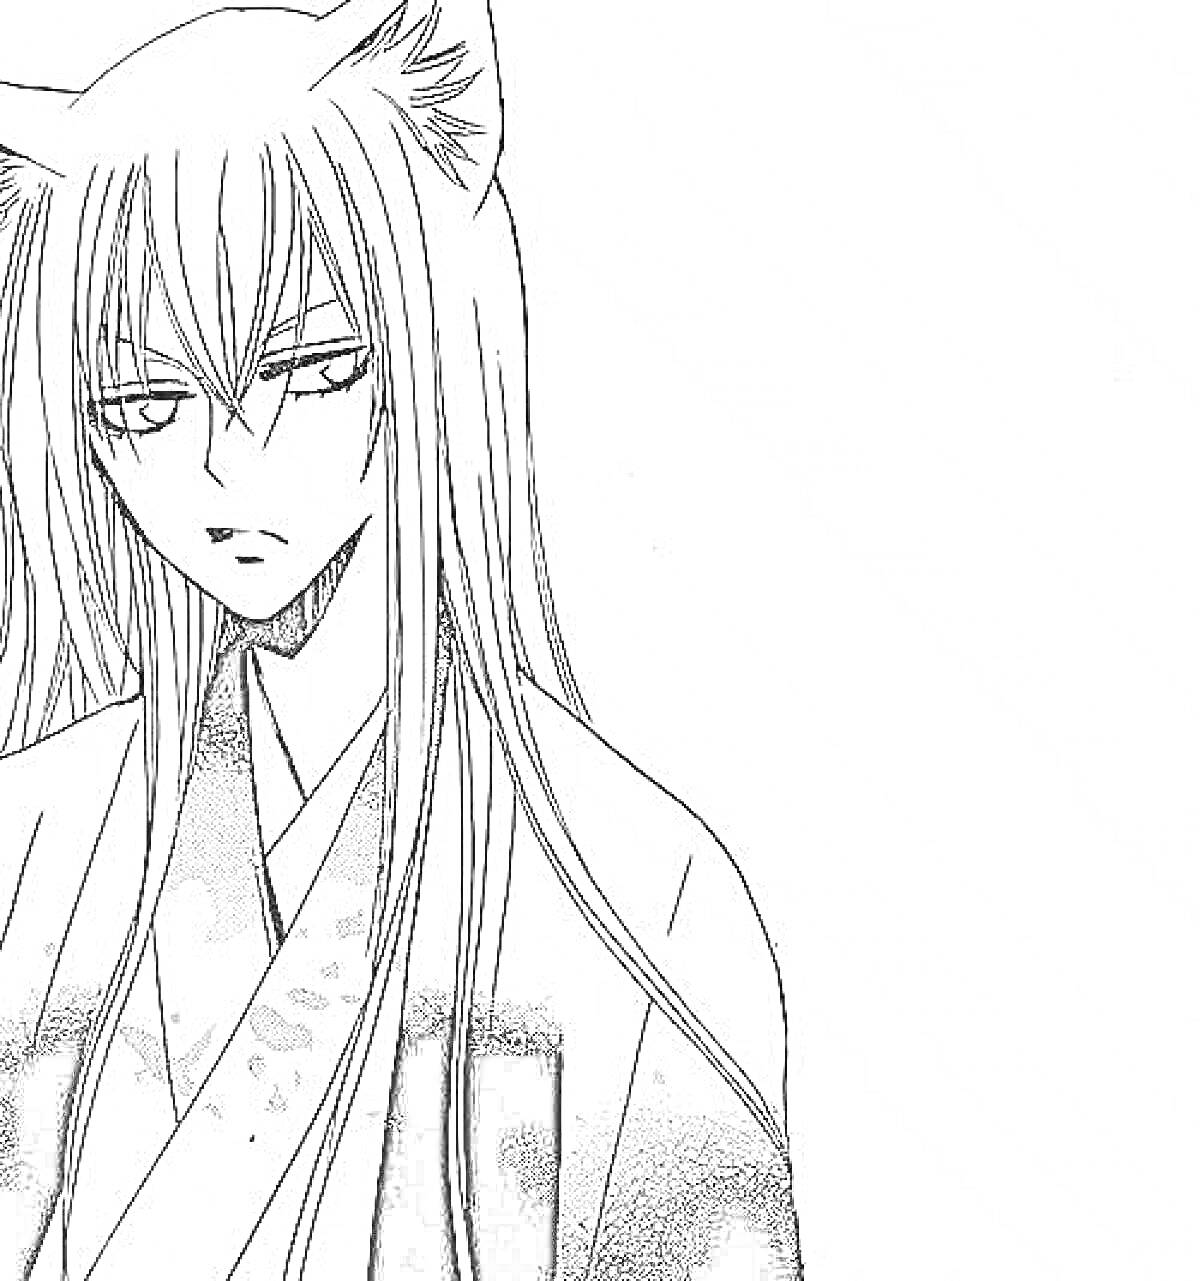 Раскраска с изображением парня с длинными волосами и кошачьими ушами в традиционной японской одежде